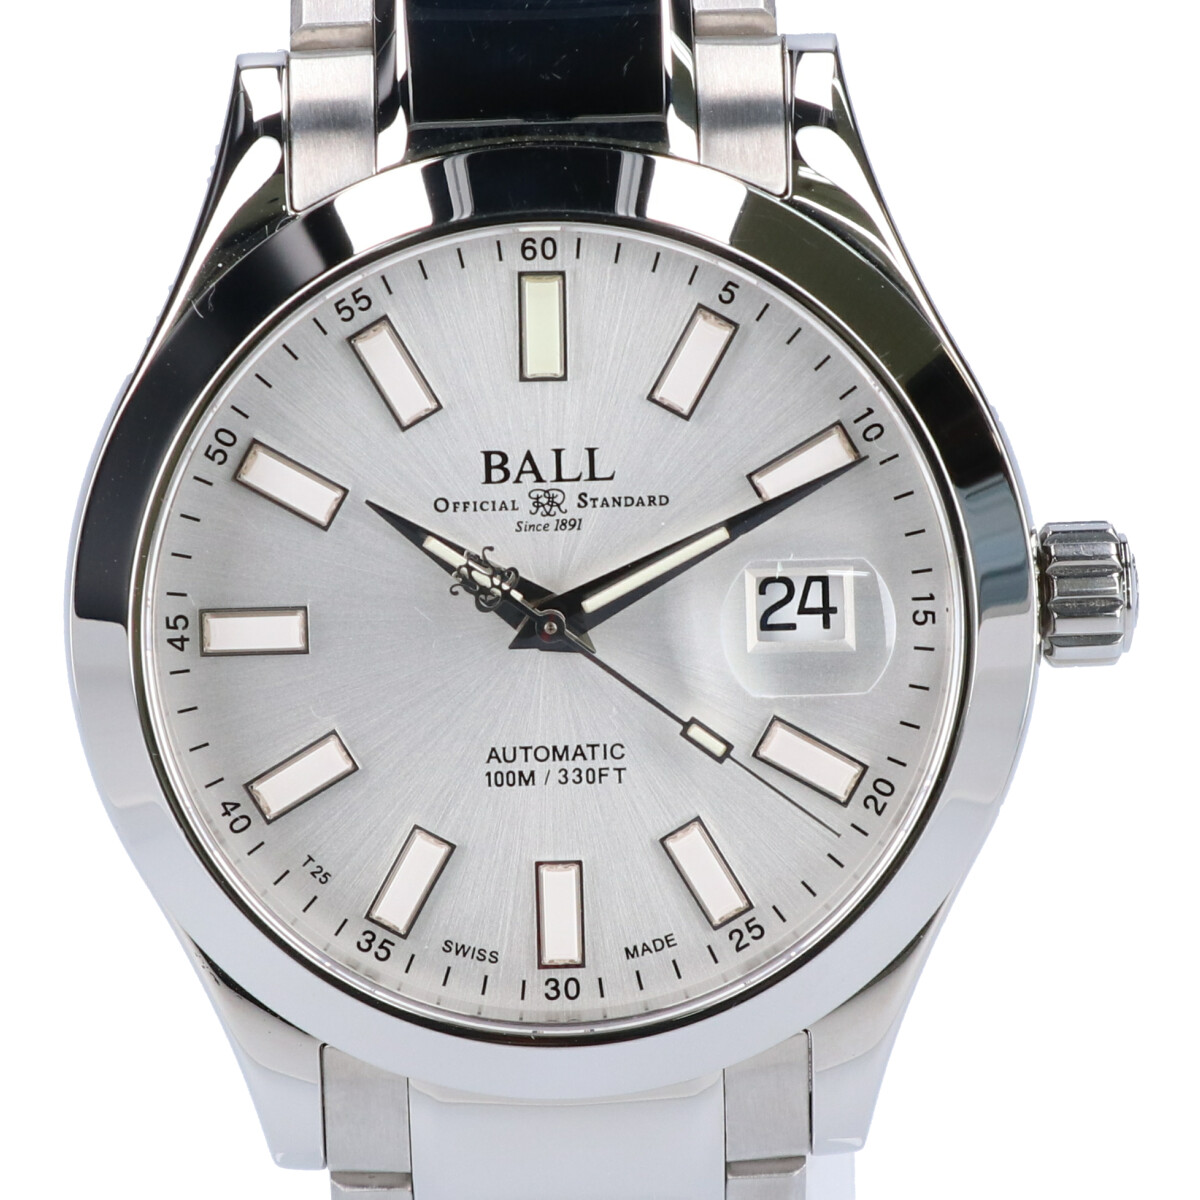 ボールウォッチのNM2026C-S6J-SL マーベライト エンジニアⅡ 自動巻き腕時計の買取実績です。